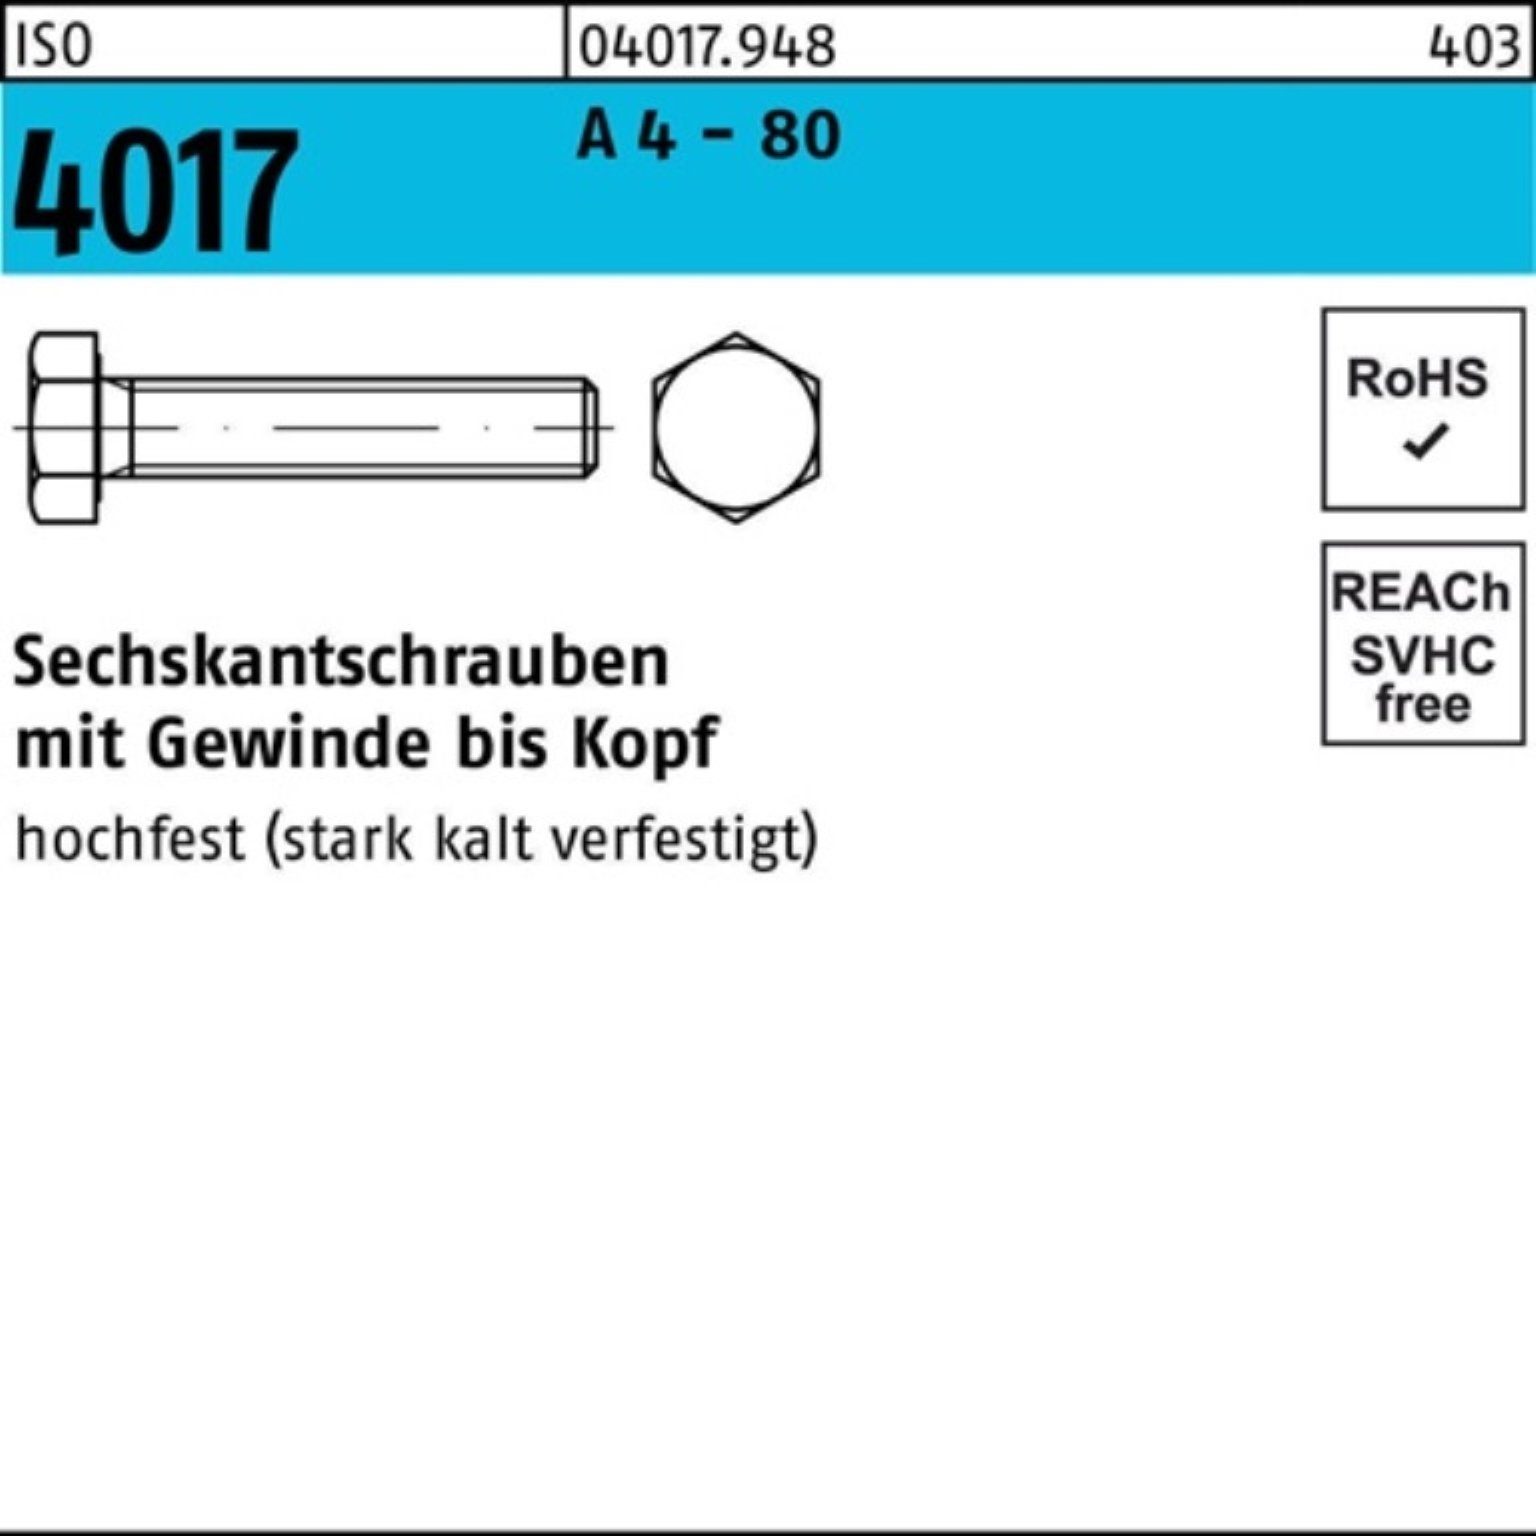 Sechskantschraube Stück 12 - A IS 4017 80 Bufab M6x Sechskantschraube VG 100 ISO 100er Pack 4